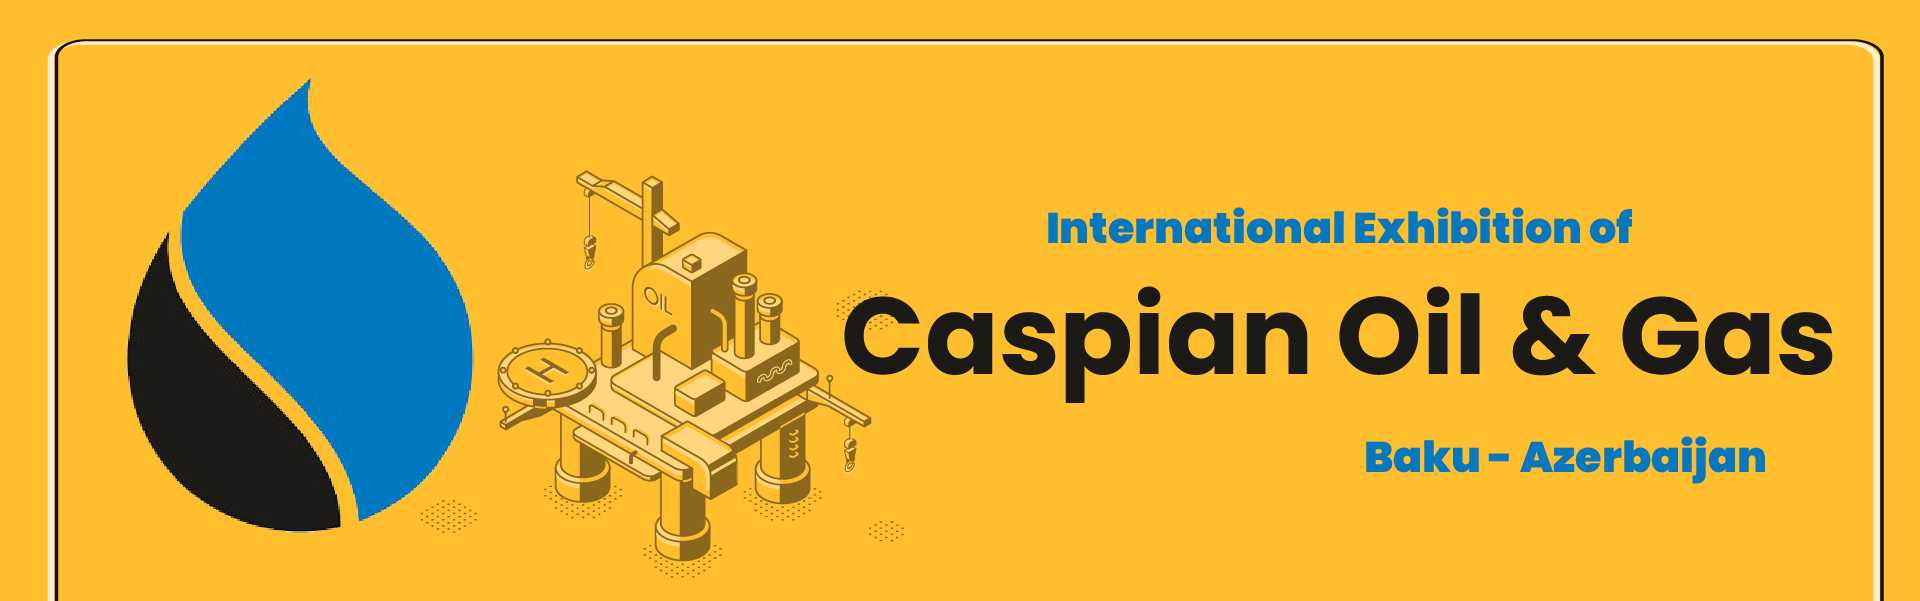 CASPIAN OIL & GAS Exhibition Baku Azerbaijan